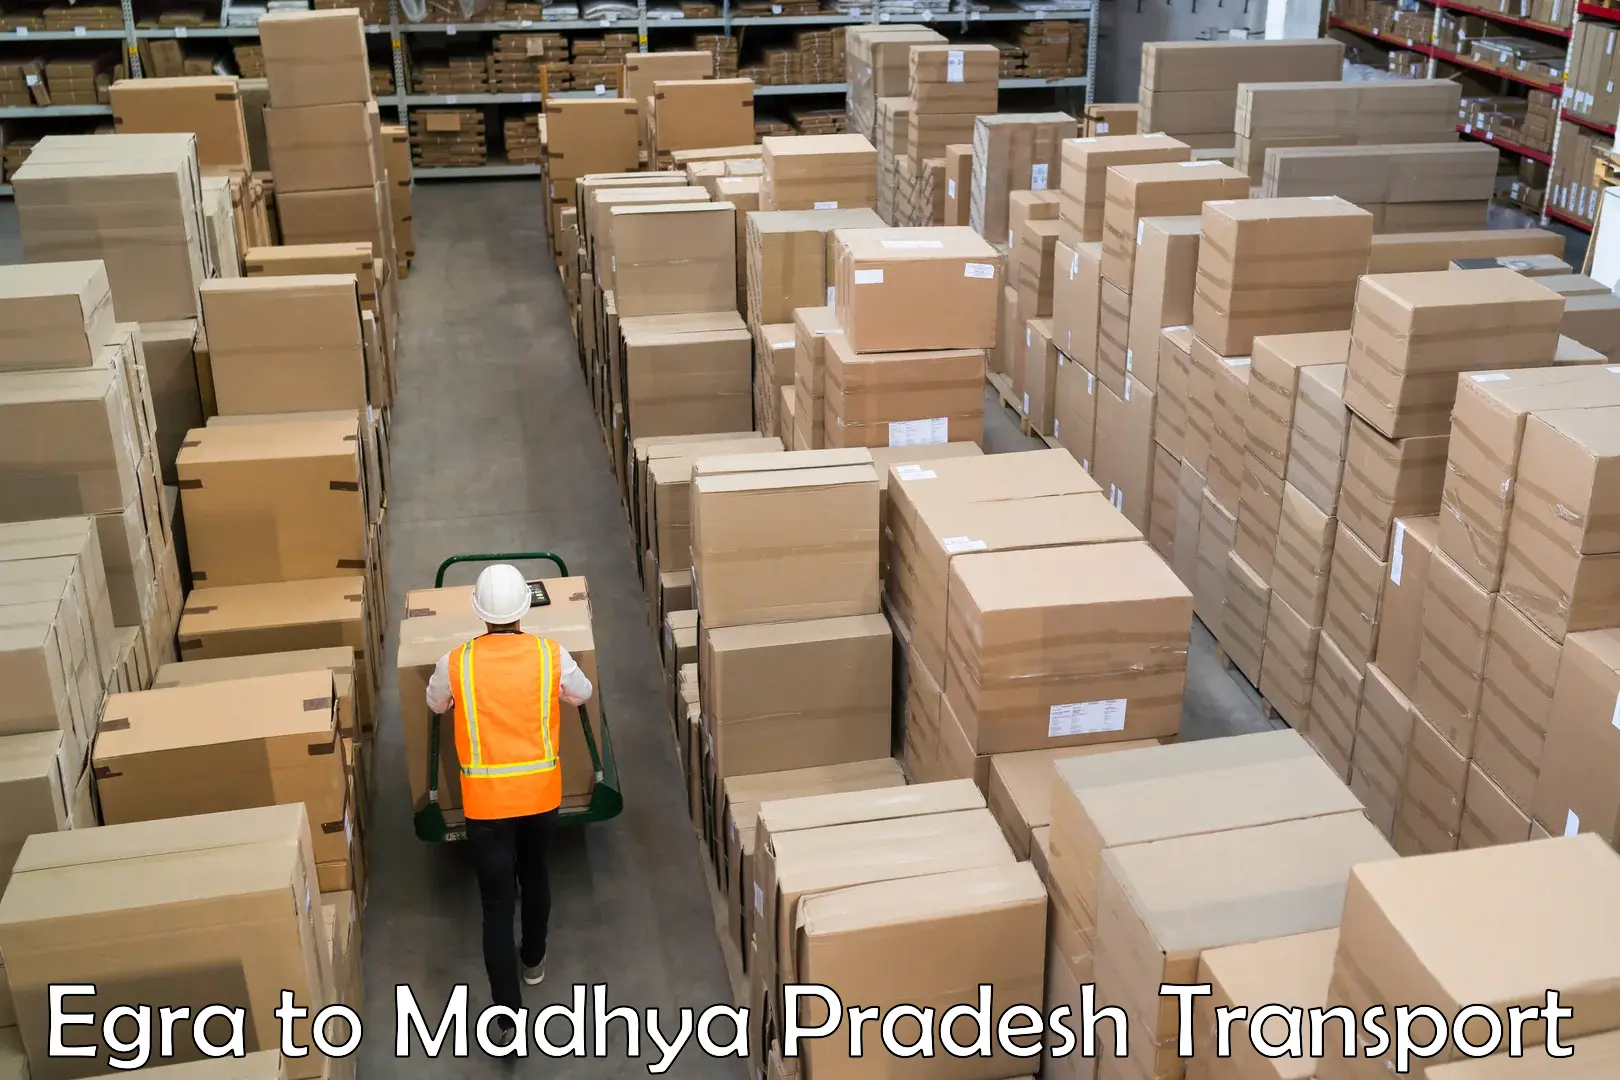 Shipping partner in Egra to Chhindwara